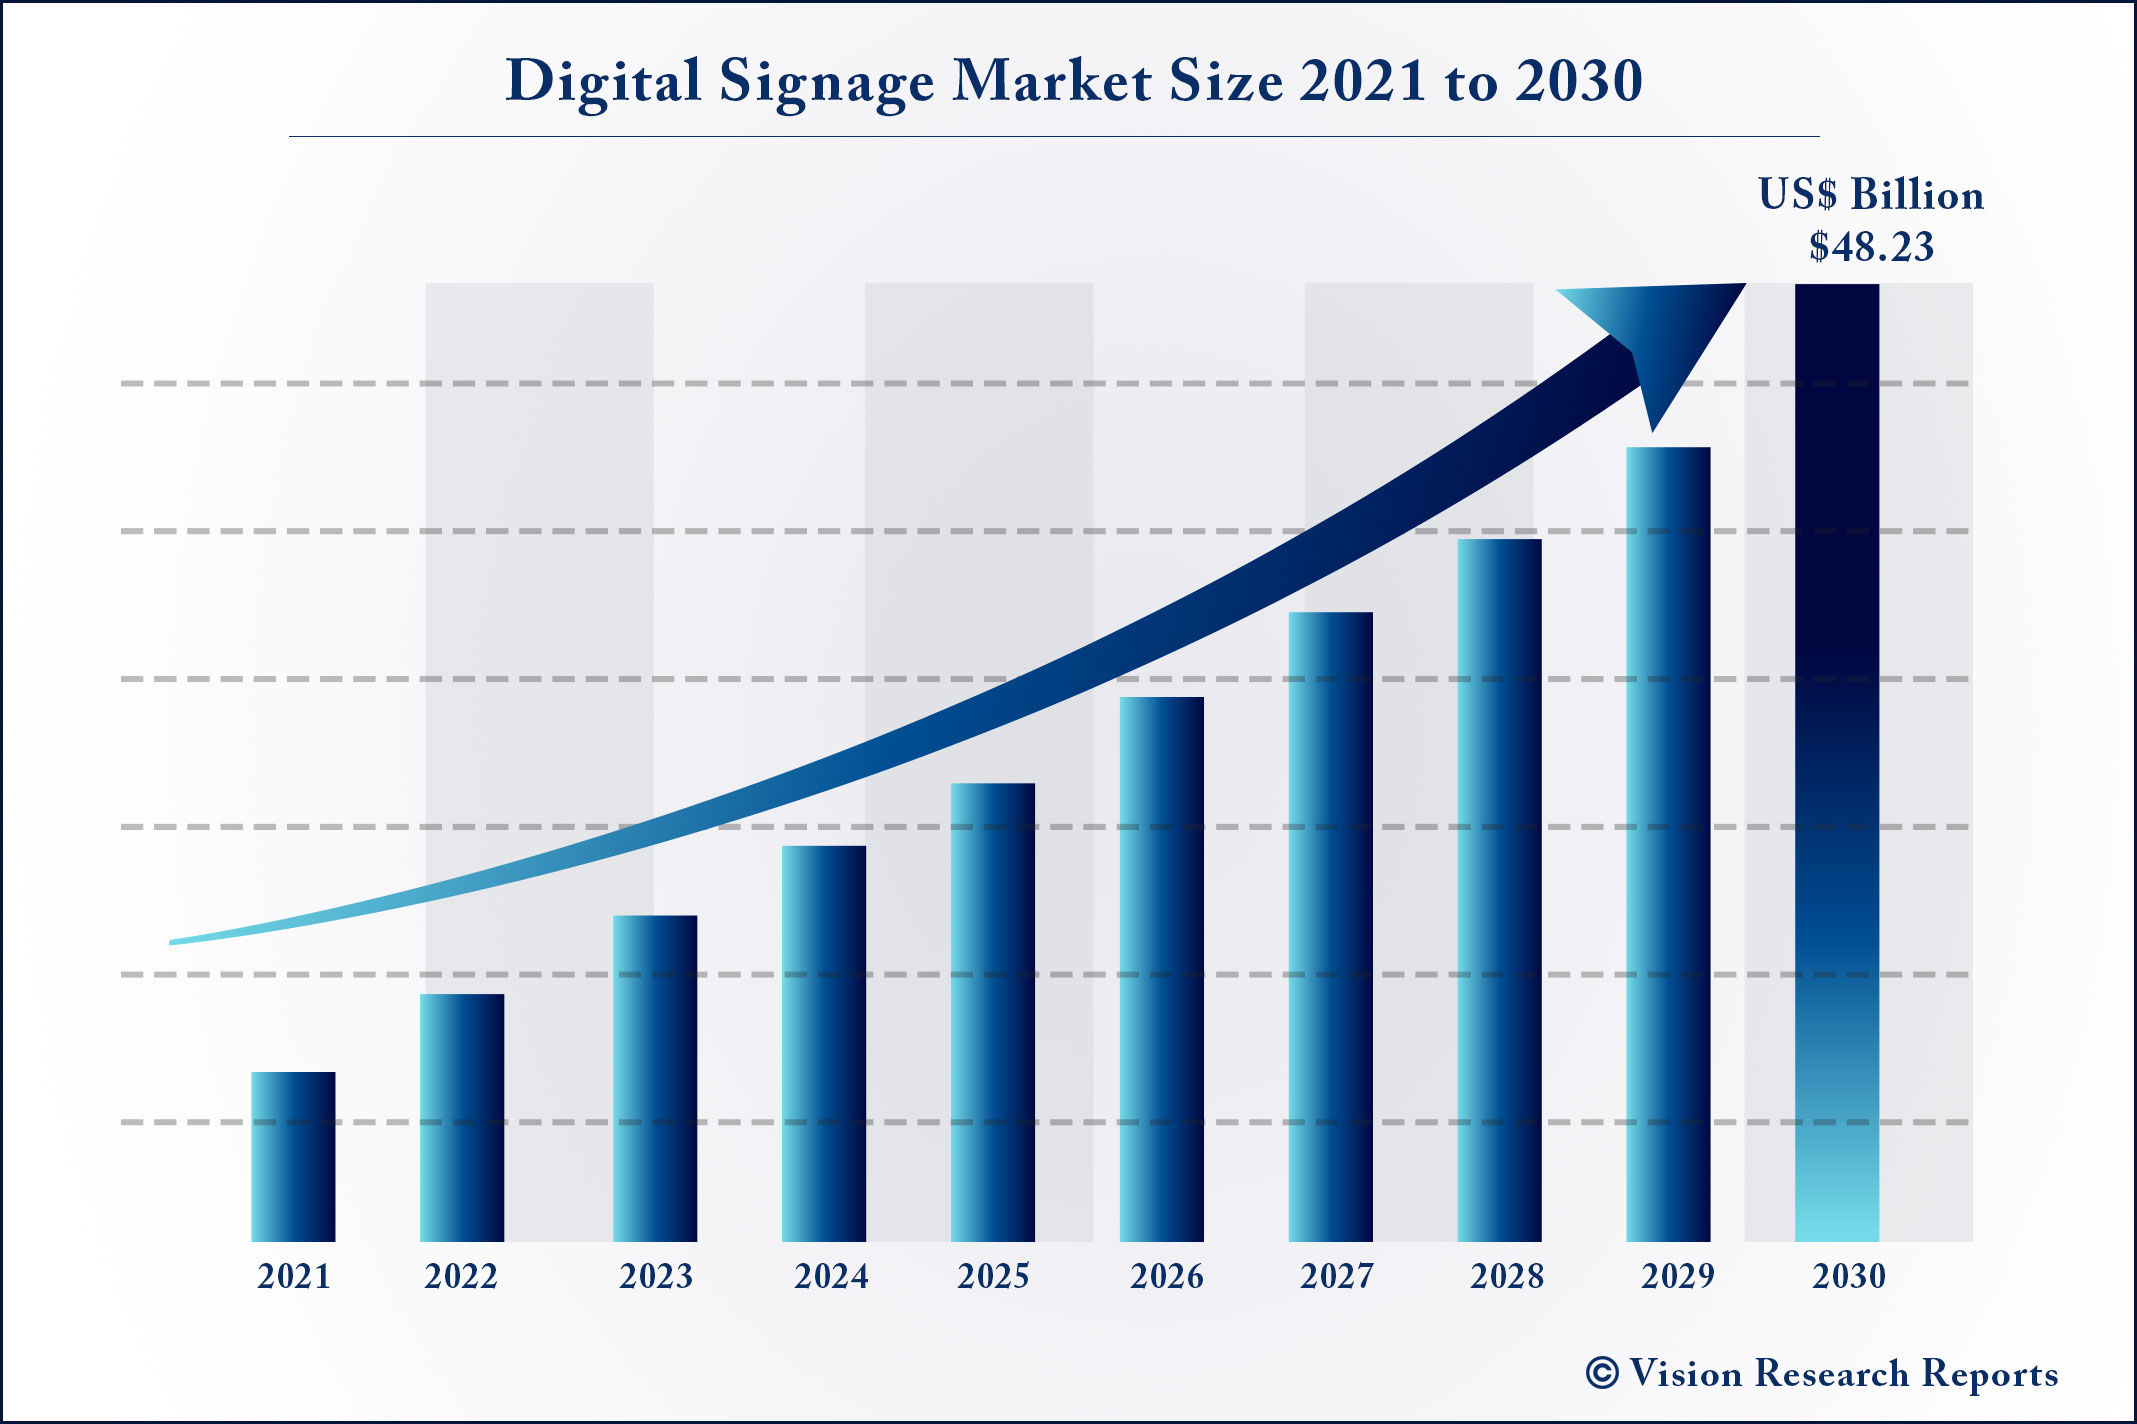 Digital Signage Market Size 2021 to 2030